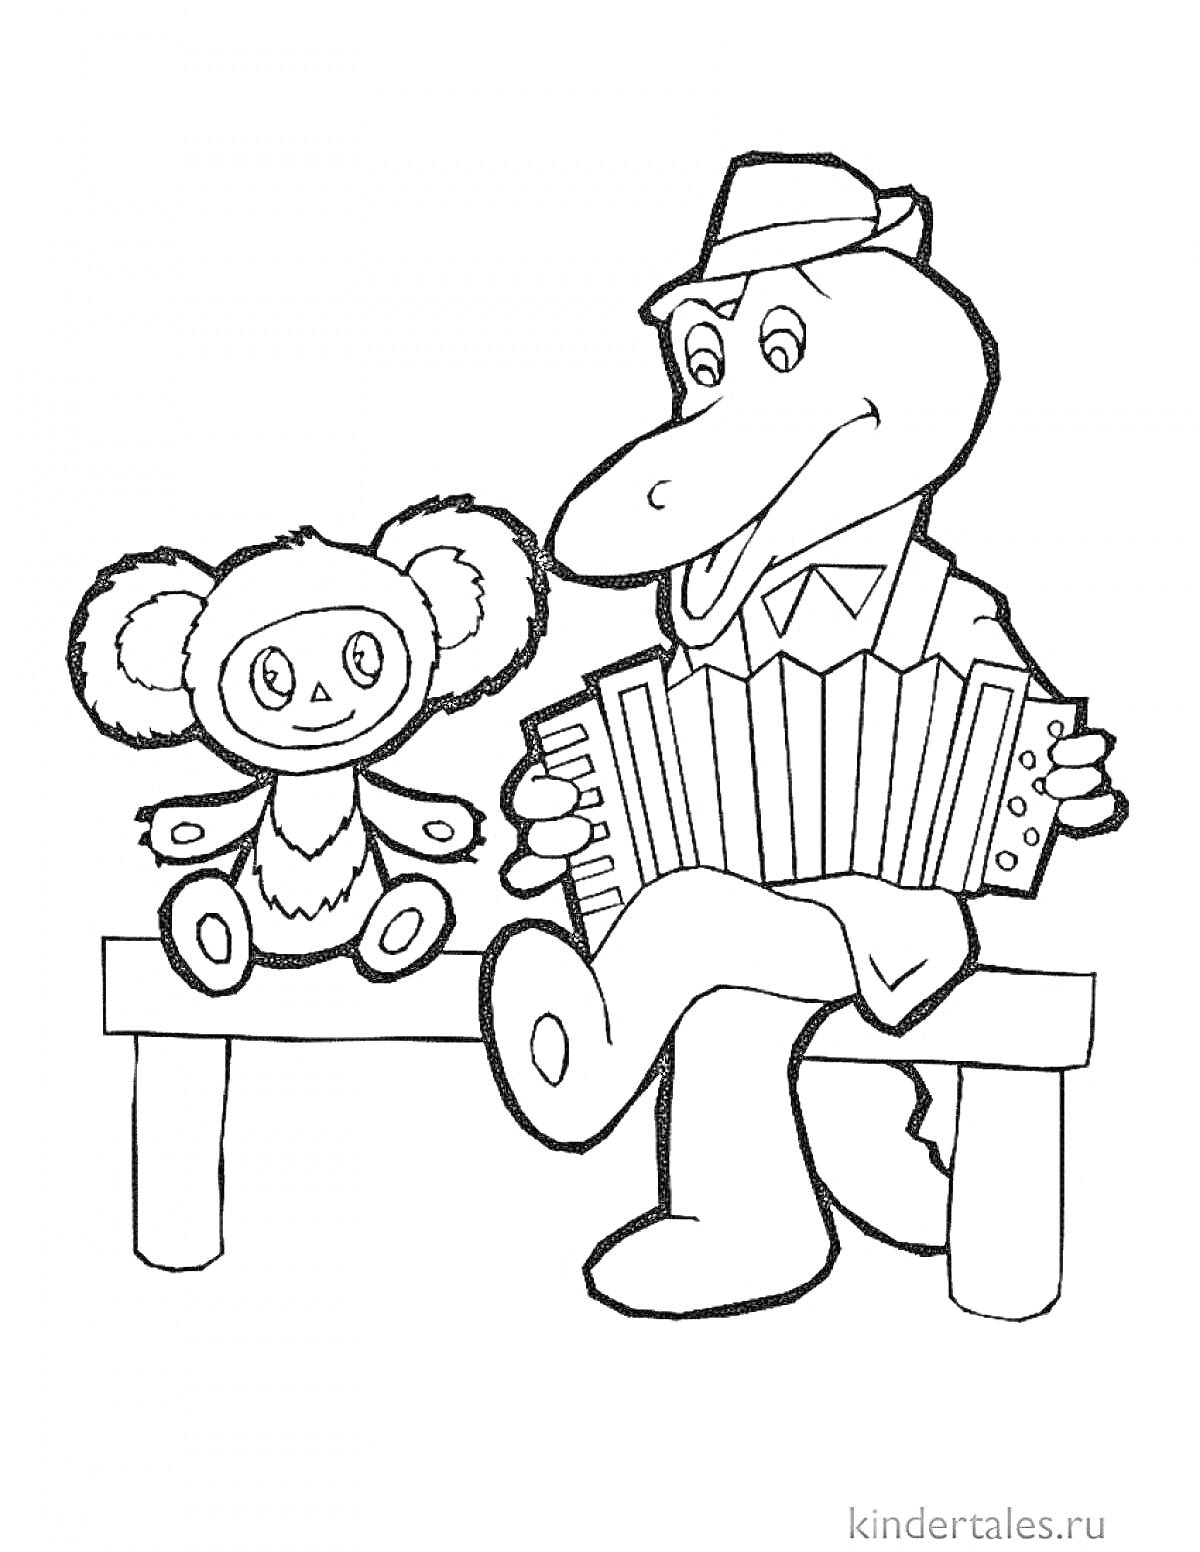 Раскраска Чебурашка сидит на скамейке рядом с крокодилом Геной, играющим на аккордеоне